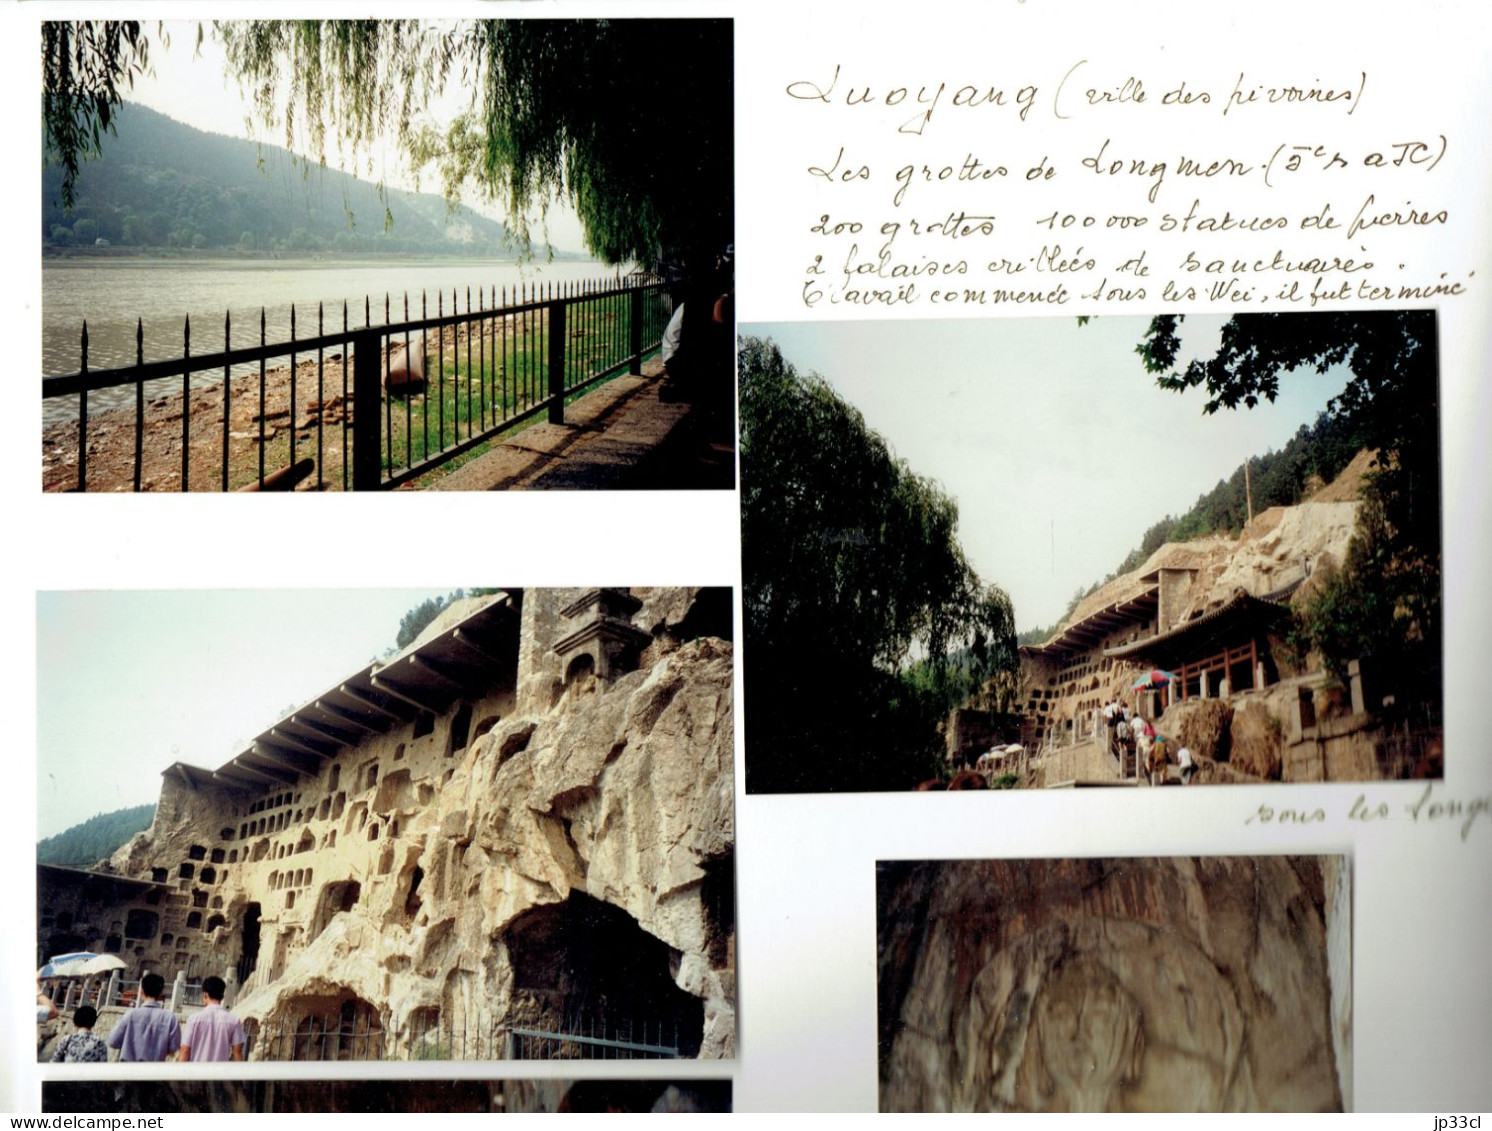 La Chine en 1995 : album de 350 photos originales légendées et commentées